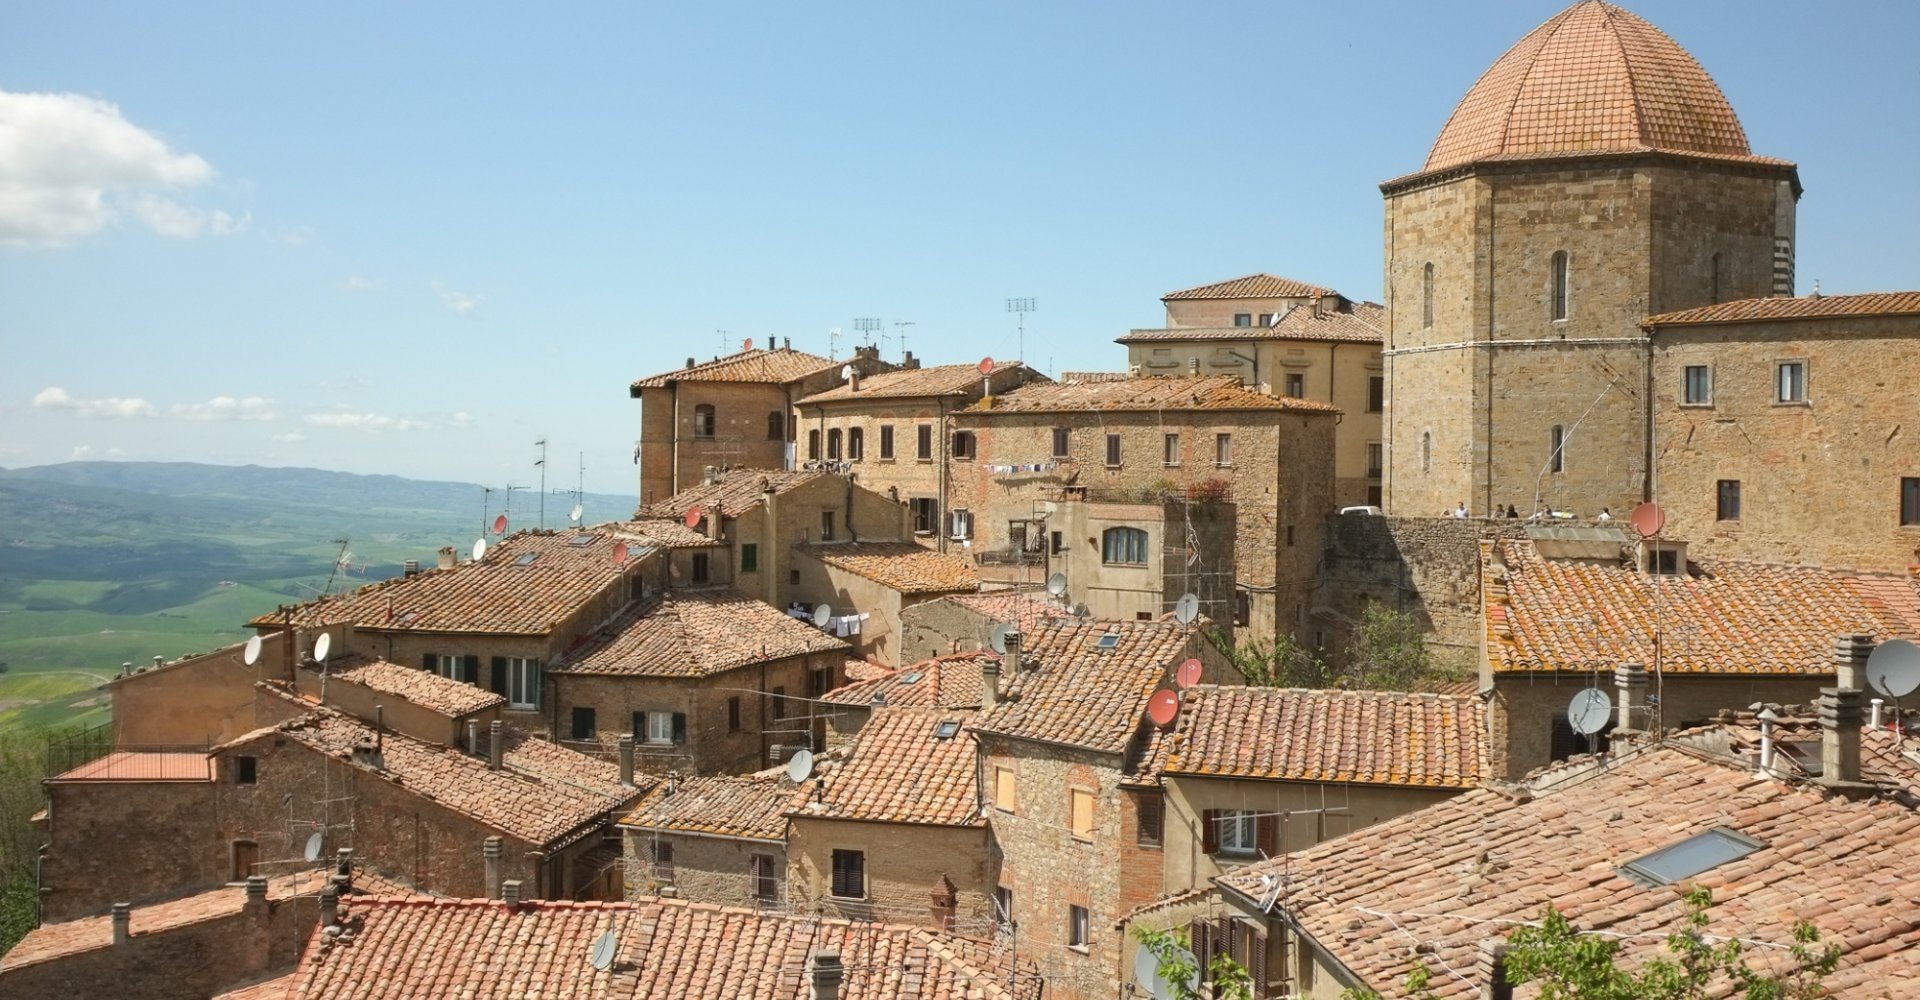 Volterra rooftops